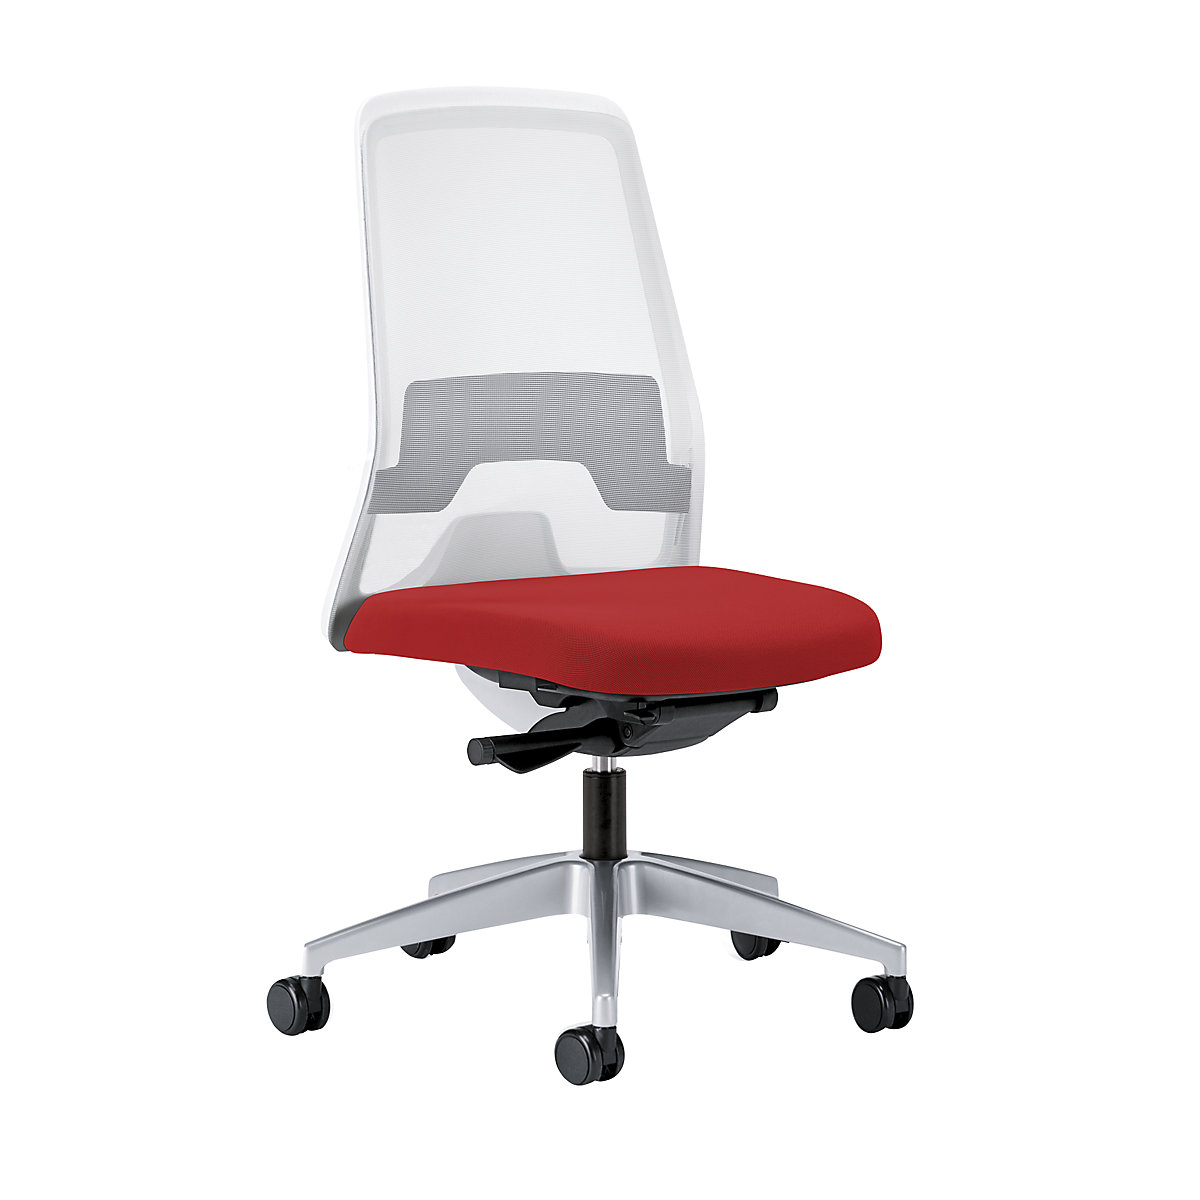 Krzesło obrotowe dla operatora EVERY, oparcie siatkowe, białe – interstuhl, szkielet brylantowo-srebrny, z twardymi rolkami, czerwony, głęb. siedziska 430 mm-5